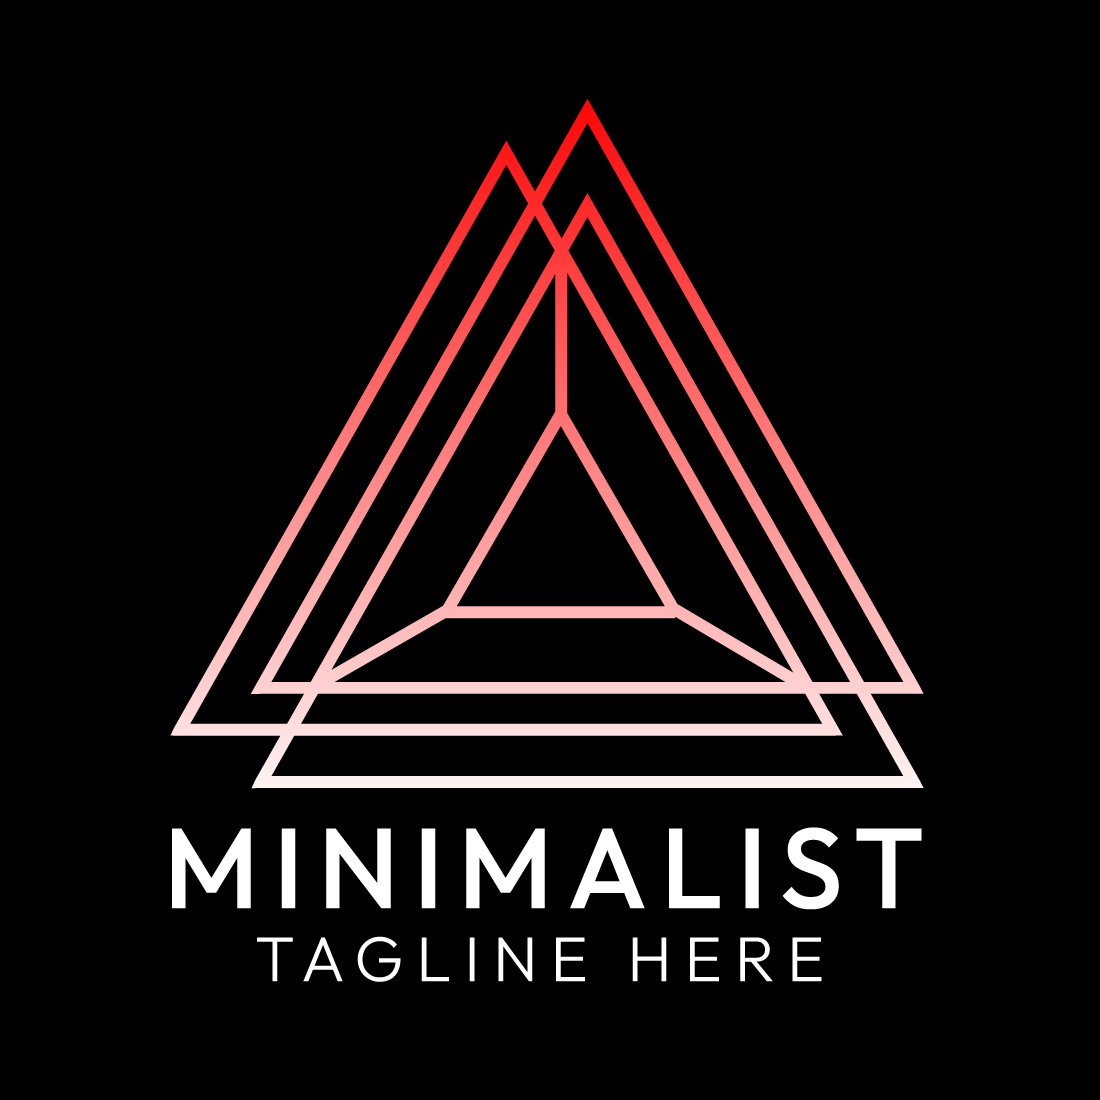 Minimalist Triangle Logo Design Bundle for Brands | Master Bundle cover image.